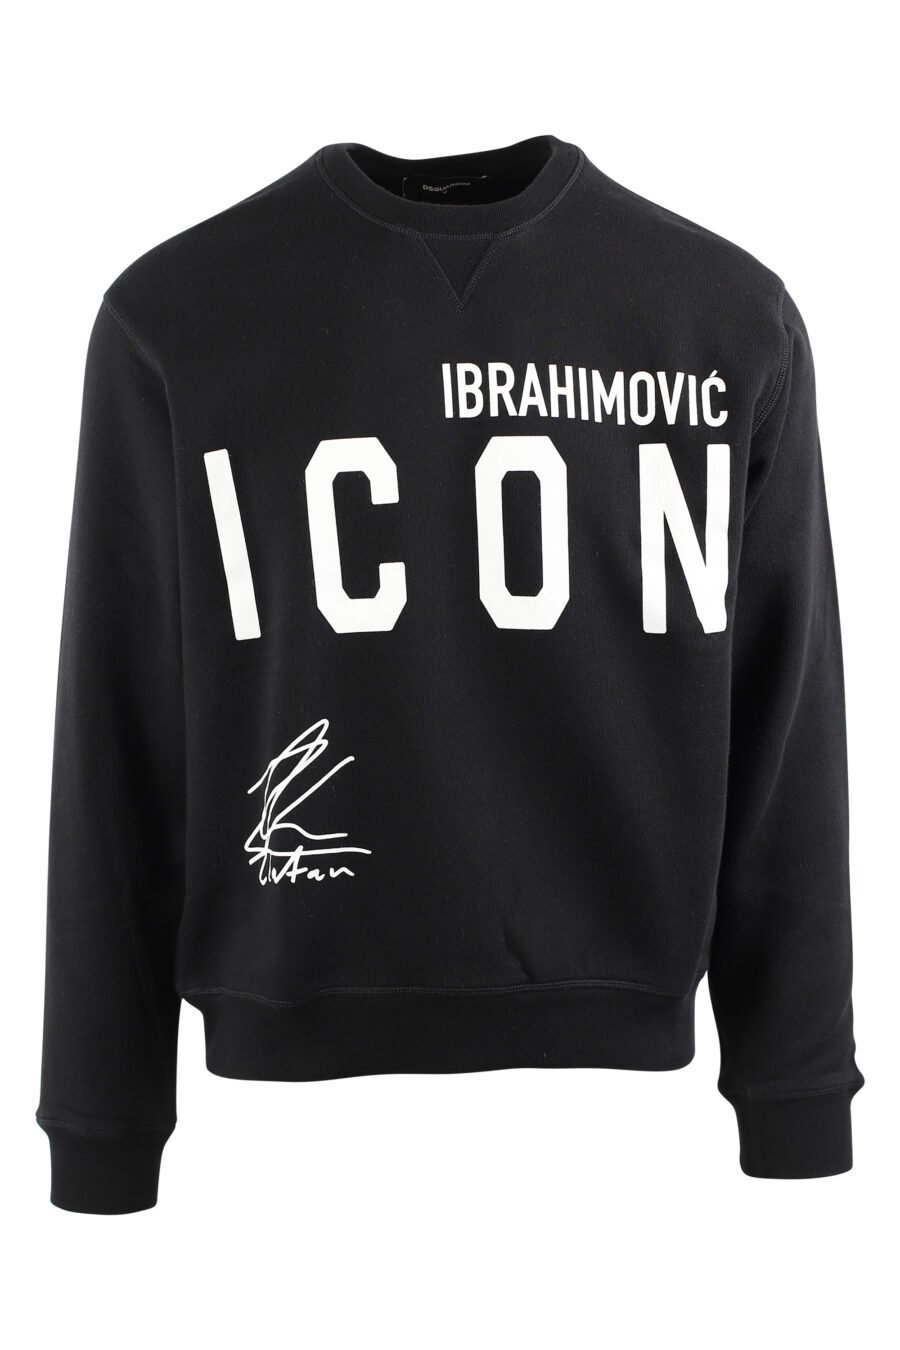 Schwarzes Sweatshirt mit Logo "Ikone Ibrahimovic" - IMG 0441